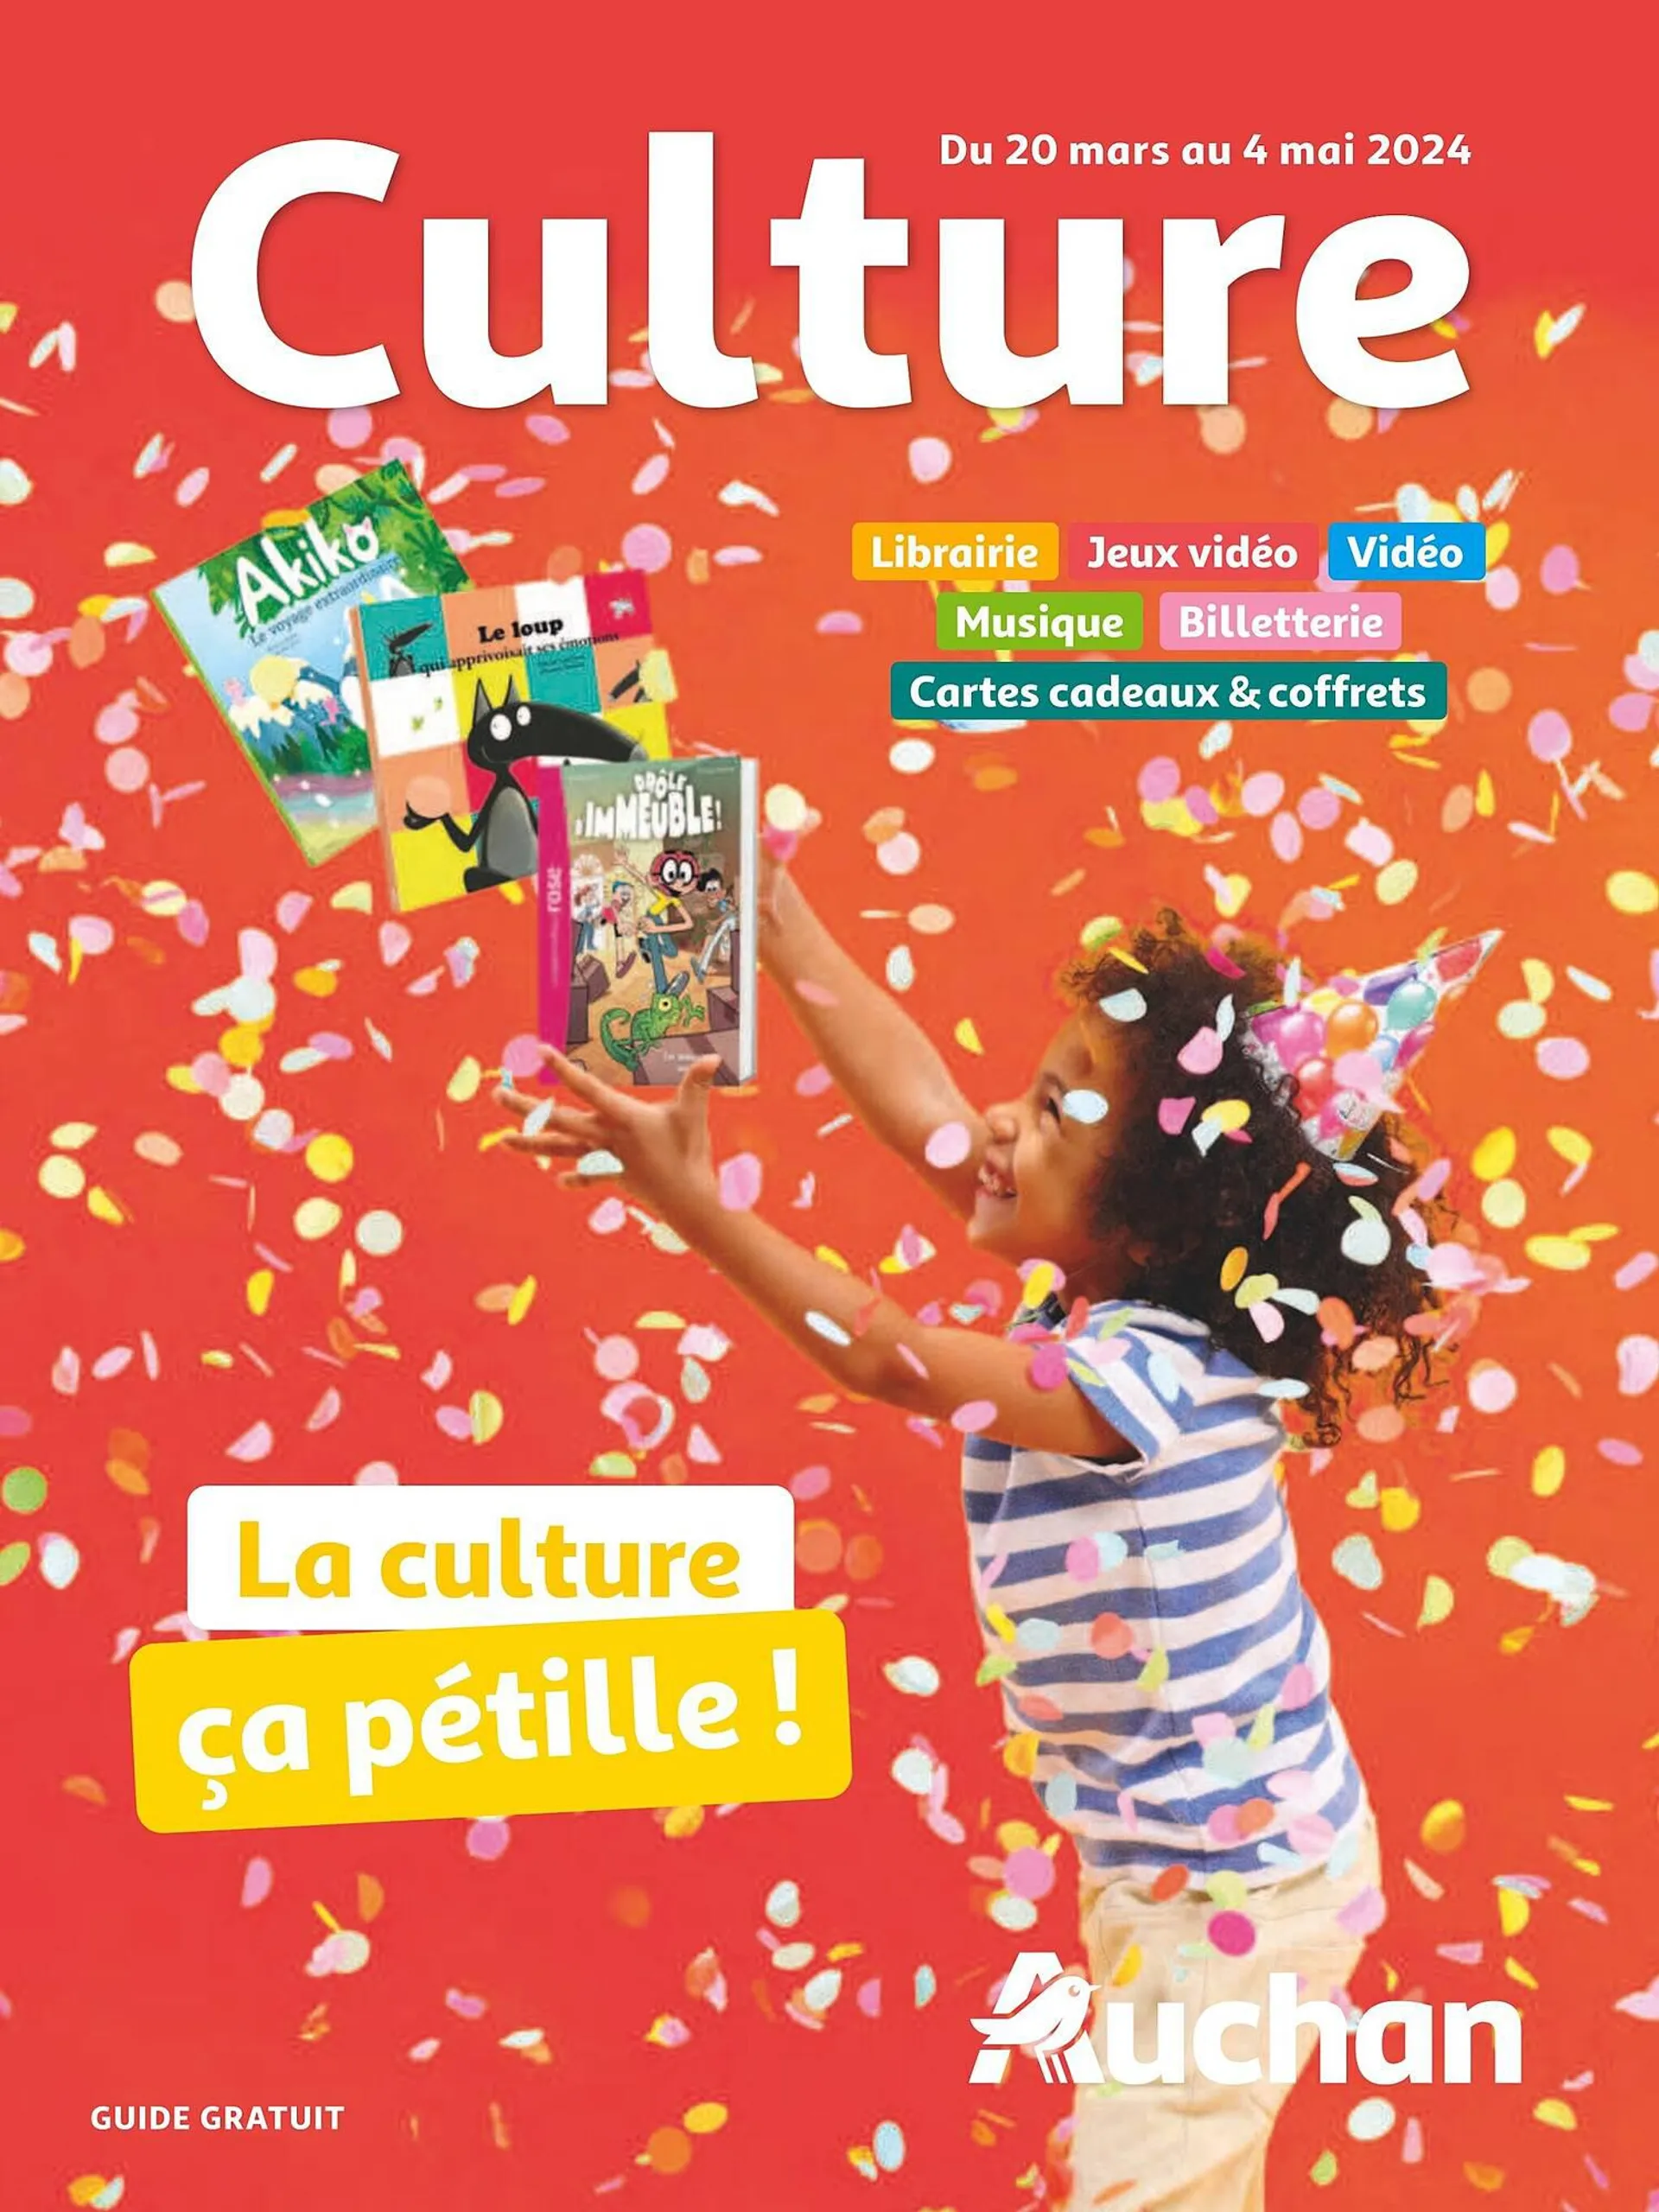 Catalogue Auchan Culture du 19 mars au 4 mai 2024 - Catalogue page 1